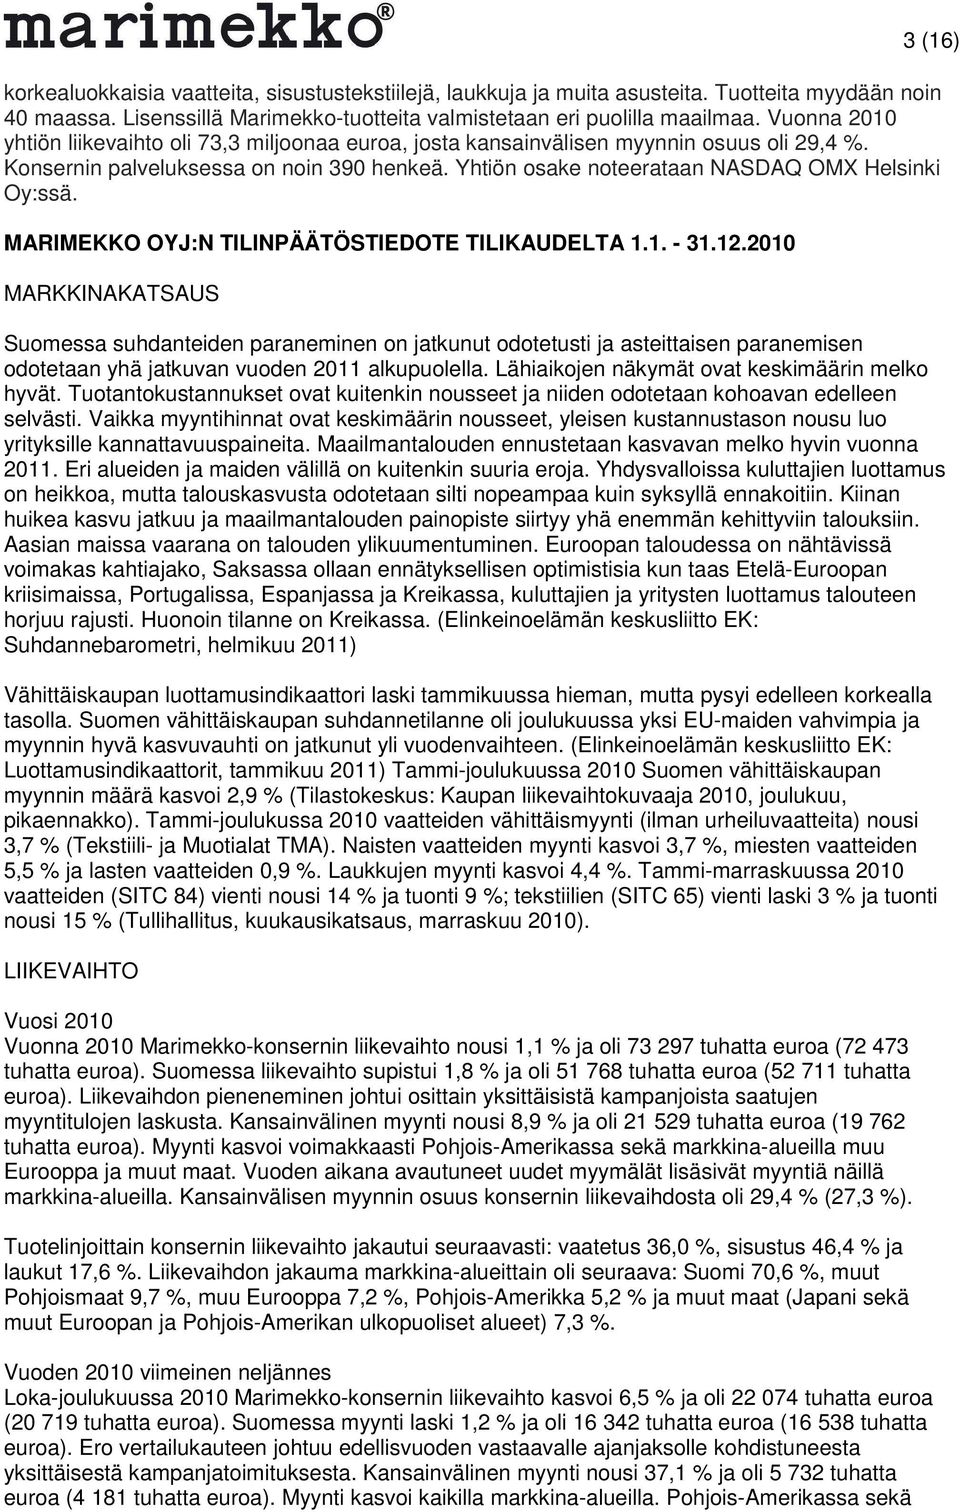 MARIMEKKO OYJ:N TILINPÄÄTÖSTIEDOTE TILIKAUDELTA 1.1. - 31.12.